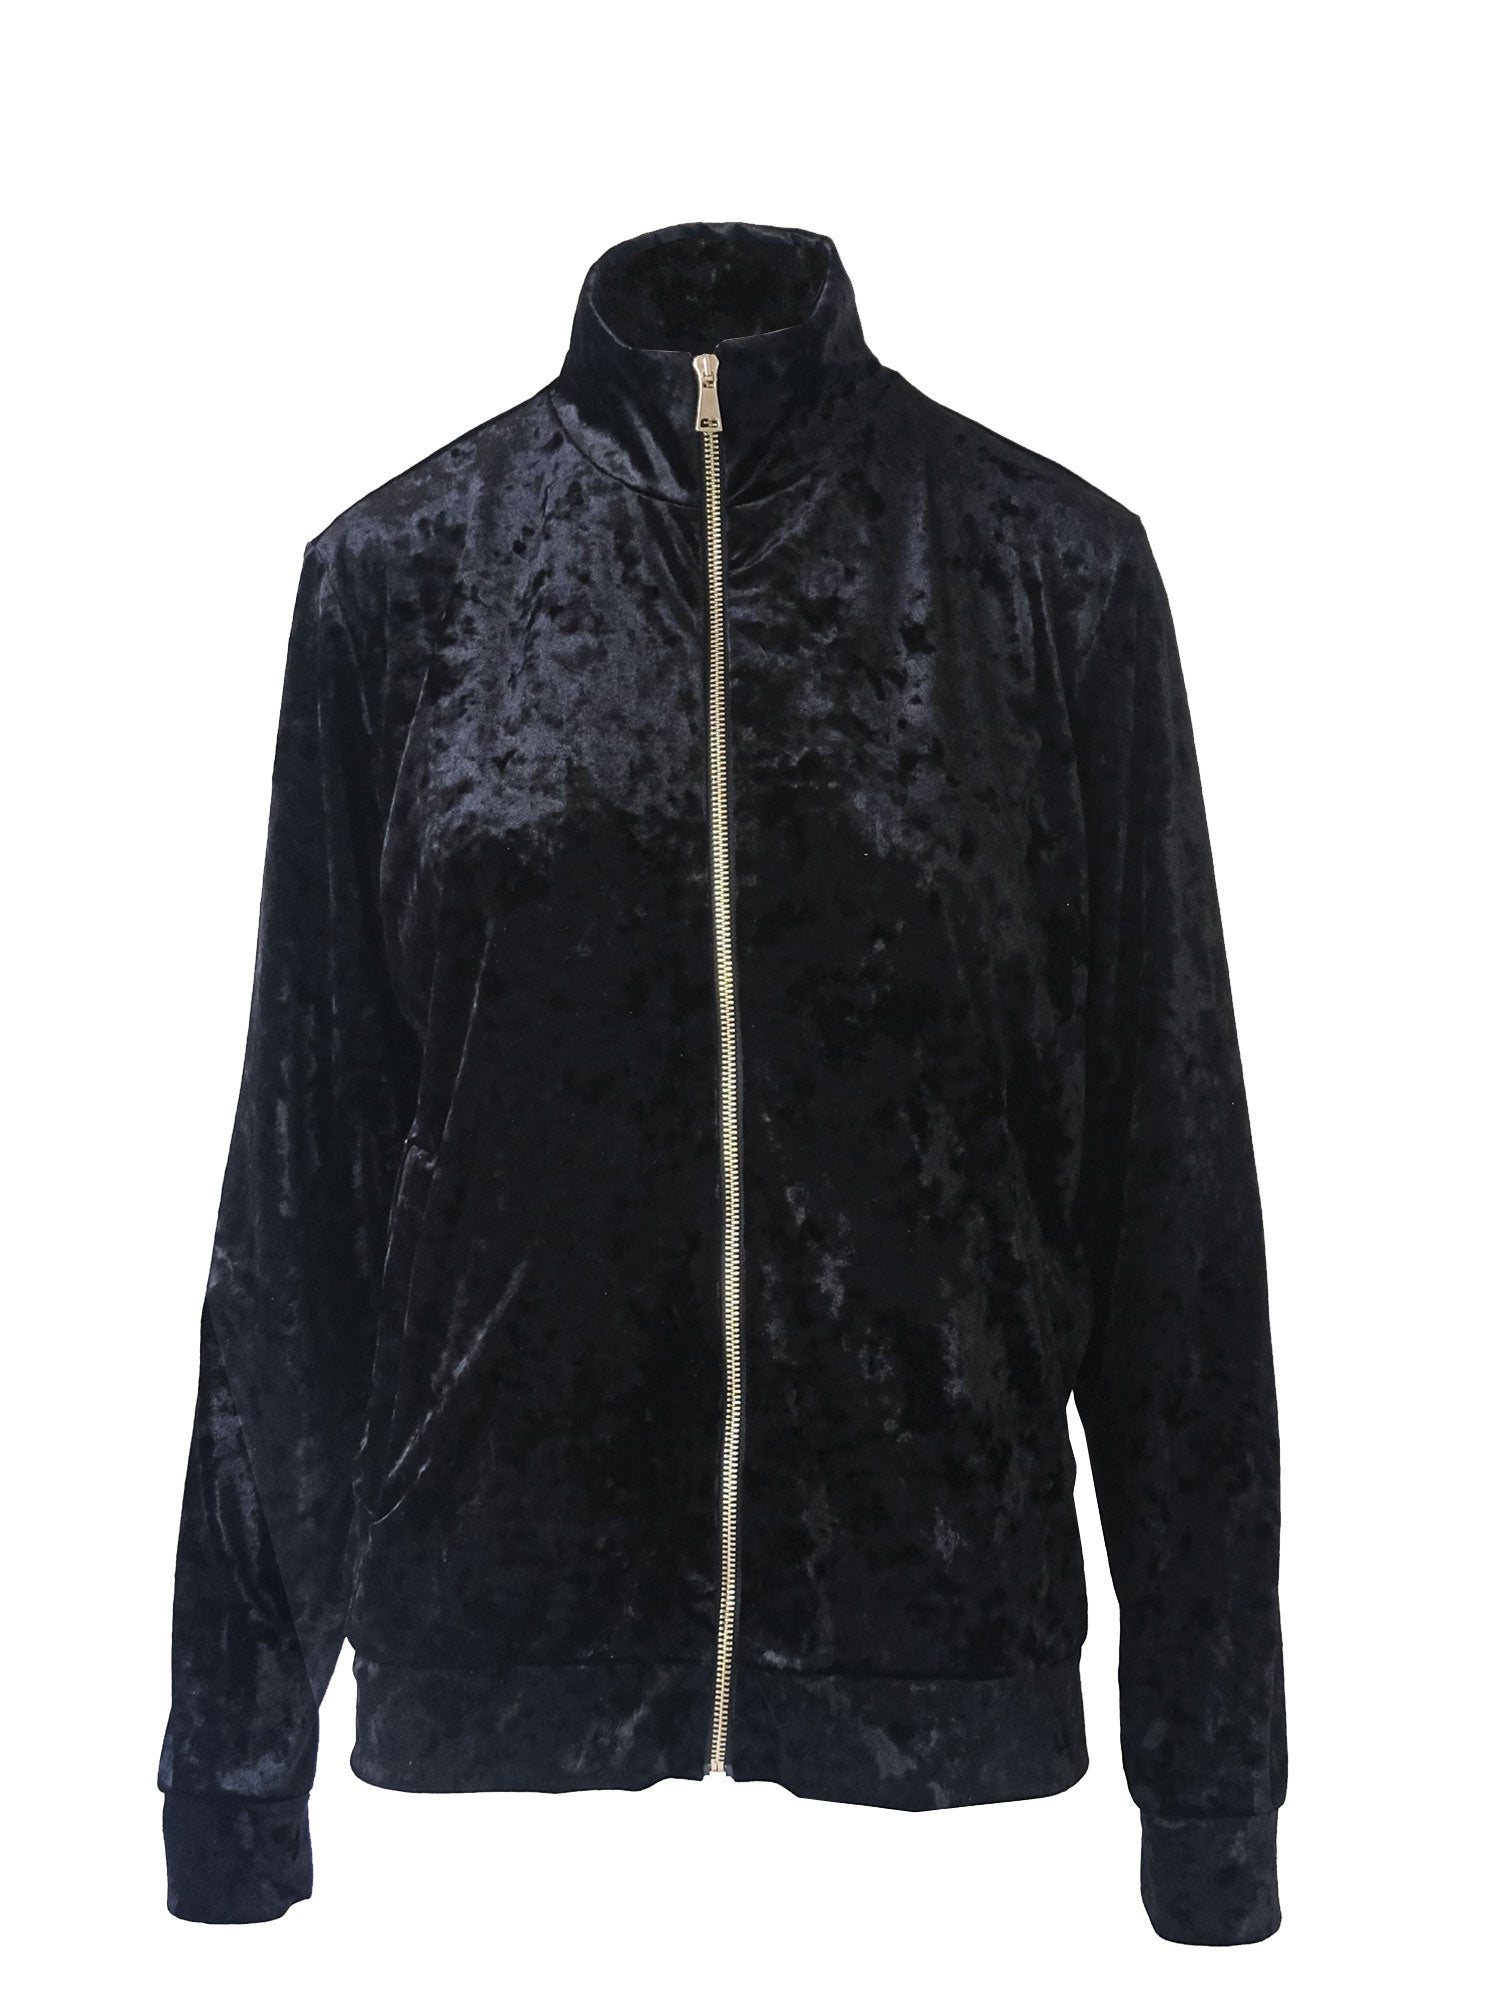 REINE - black hammered chenille jacket